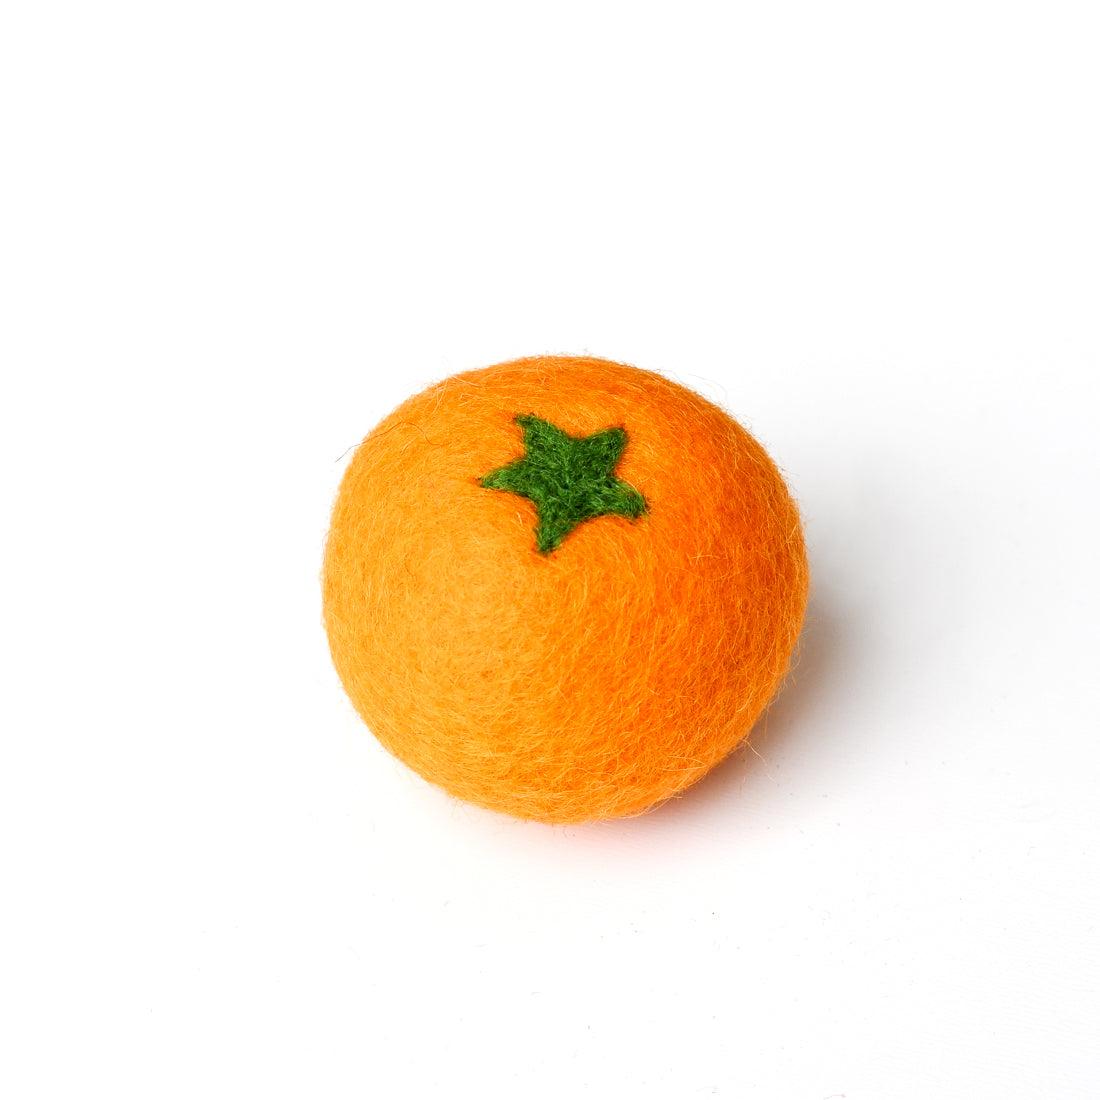 Felt Orange - Tara Treasures